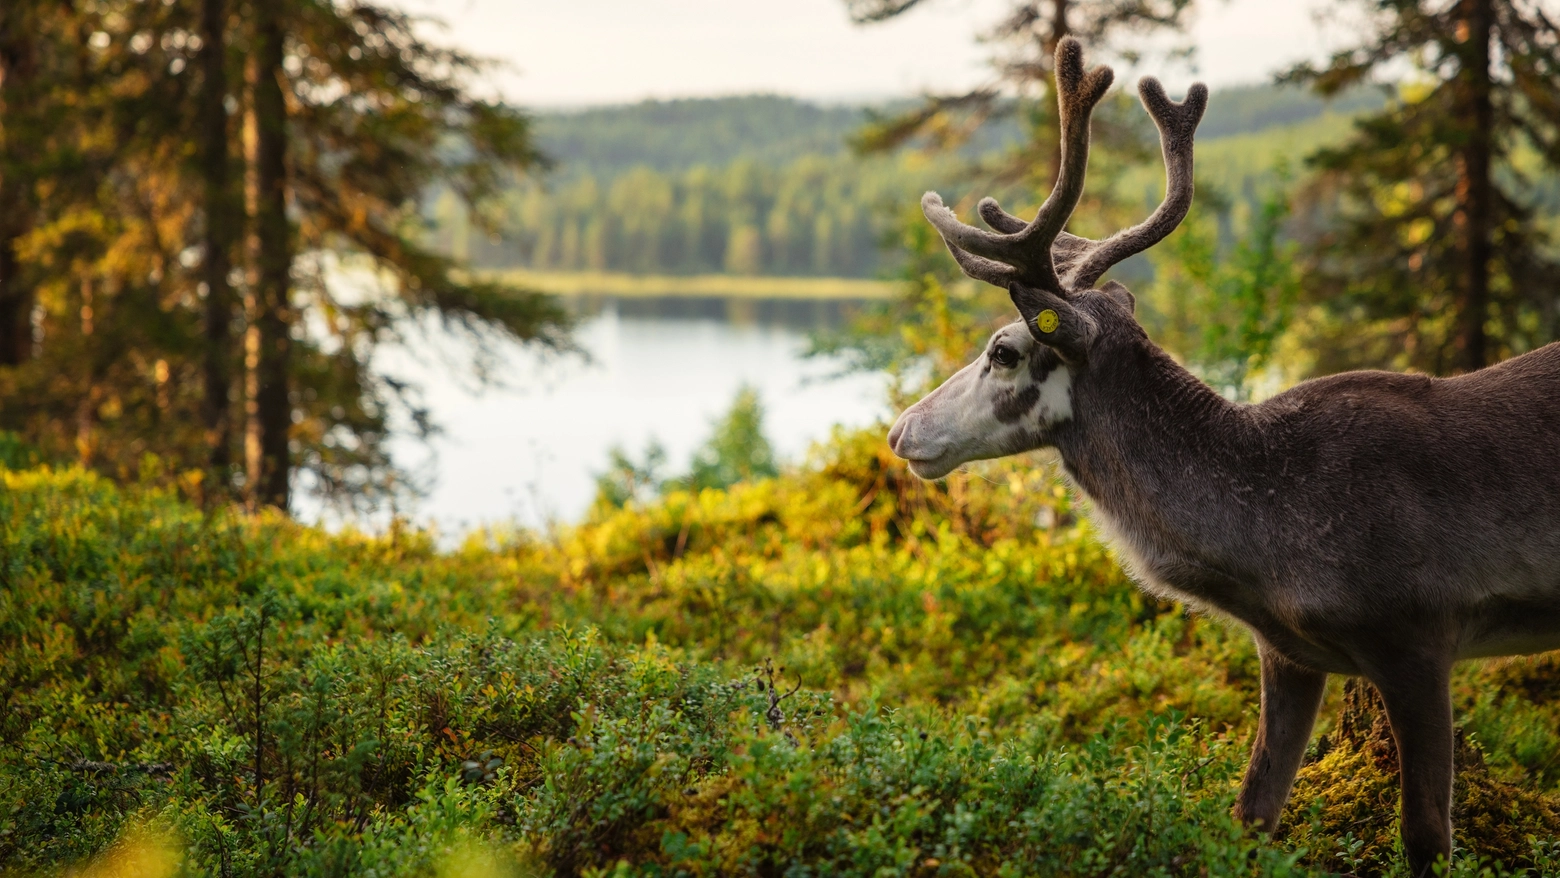 Il concorso ‘Trust the wilderness’, promosso dall'ente del turismo del paese nordico, mette in palio sei viaggi. Ecco le date e le modalità per partecipare